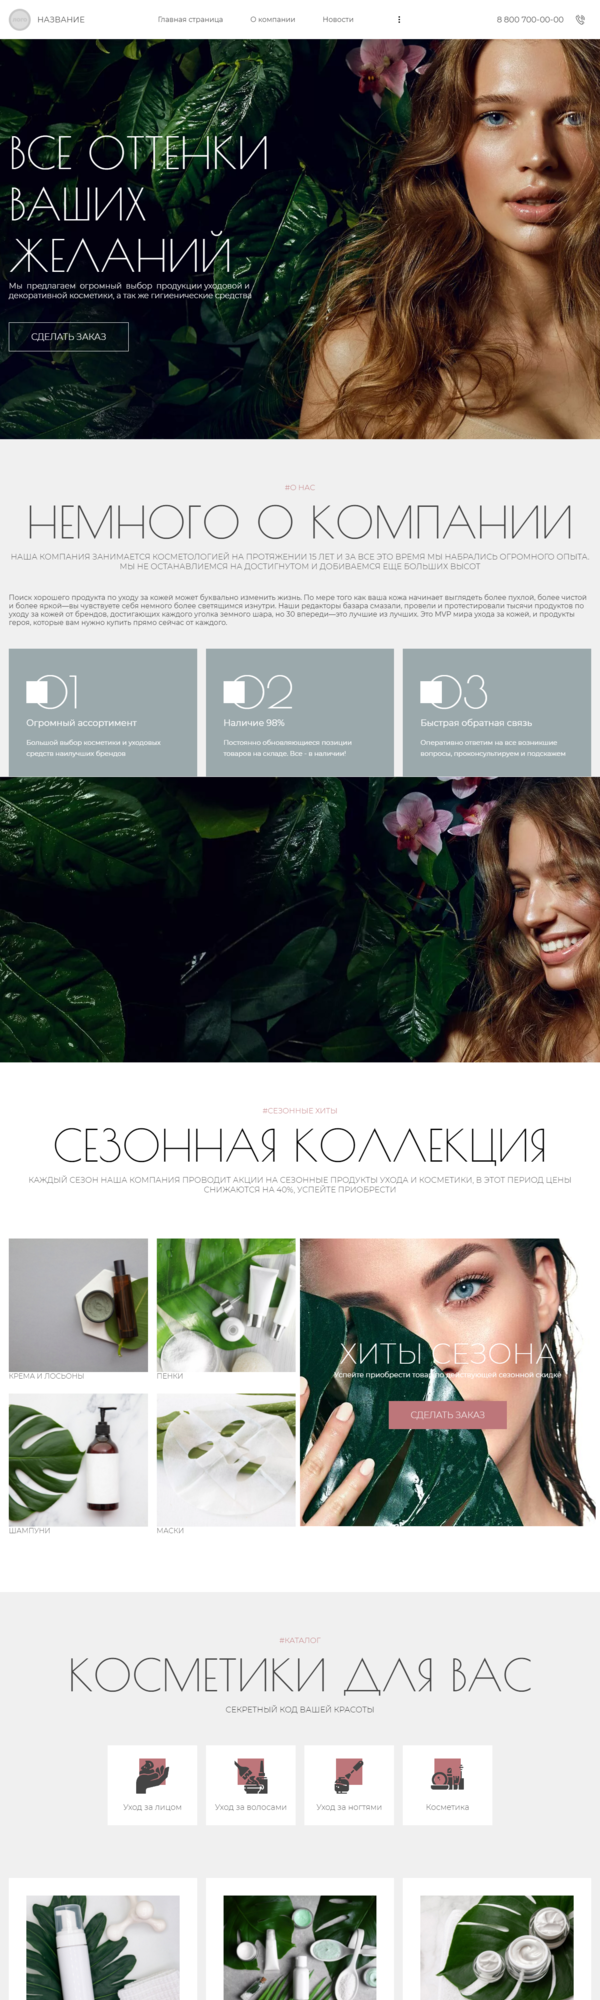 Готовый Сайт-Бизнес № 3599211 - Сайт для косметологической компании (Десктопная версия)